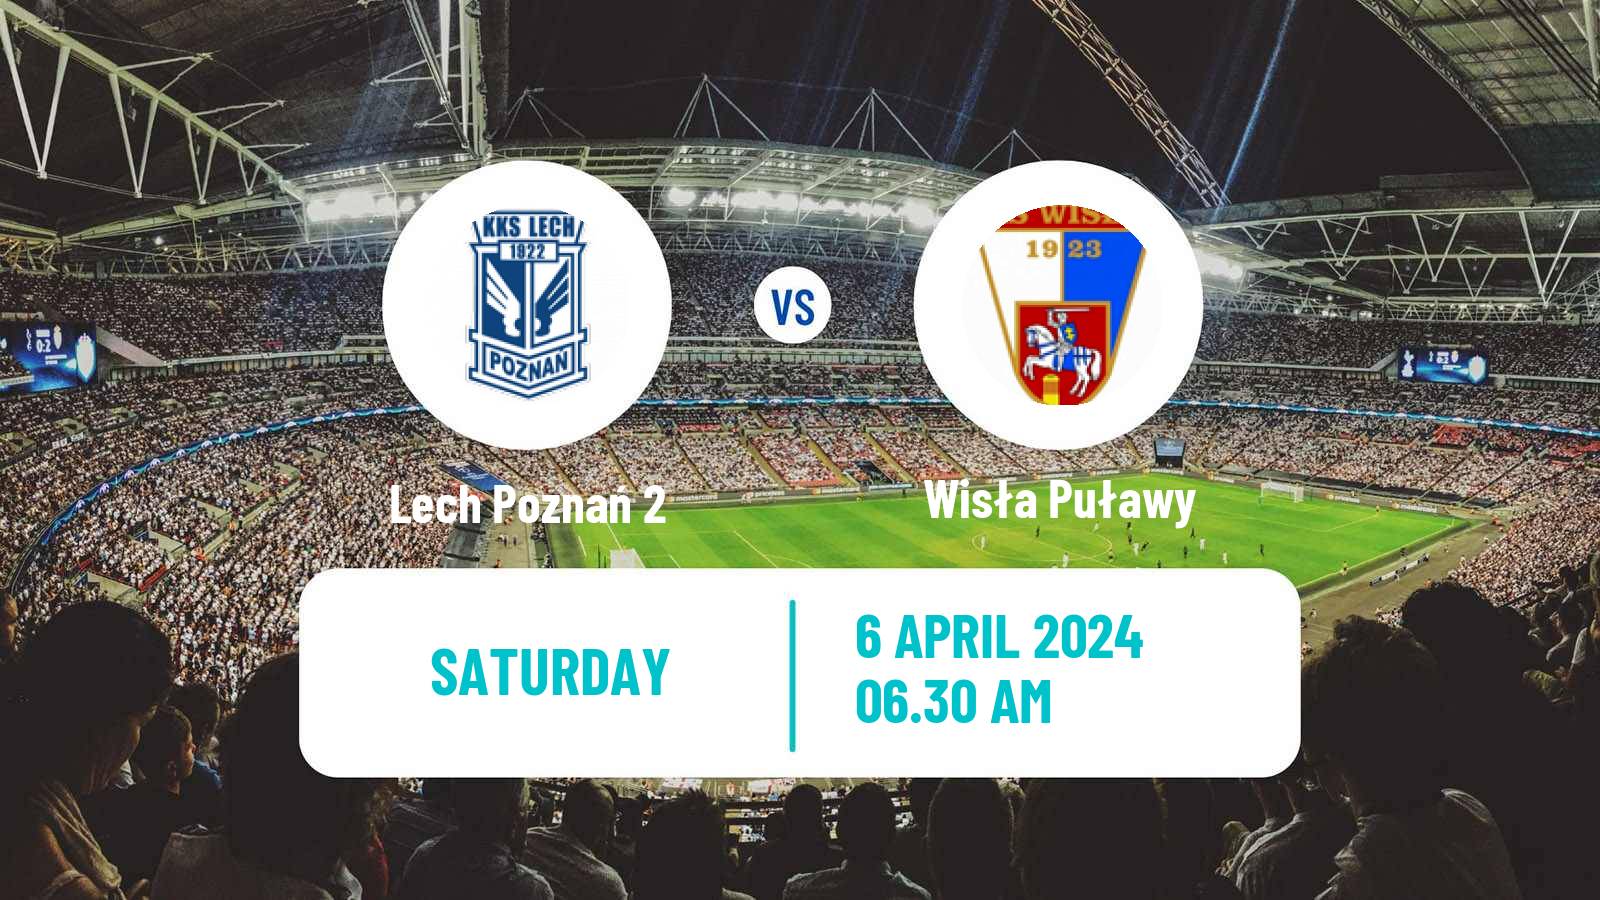 Soccer Polish Division 2 Lech Poznań 2 - Wisła Puławy